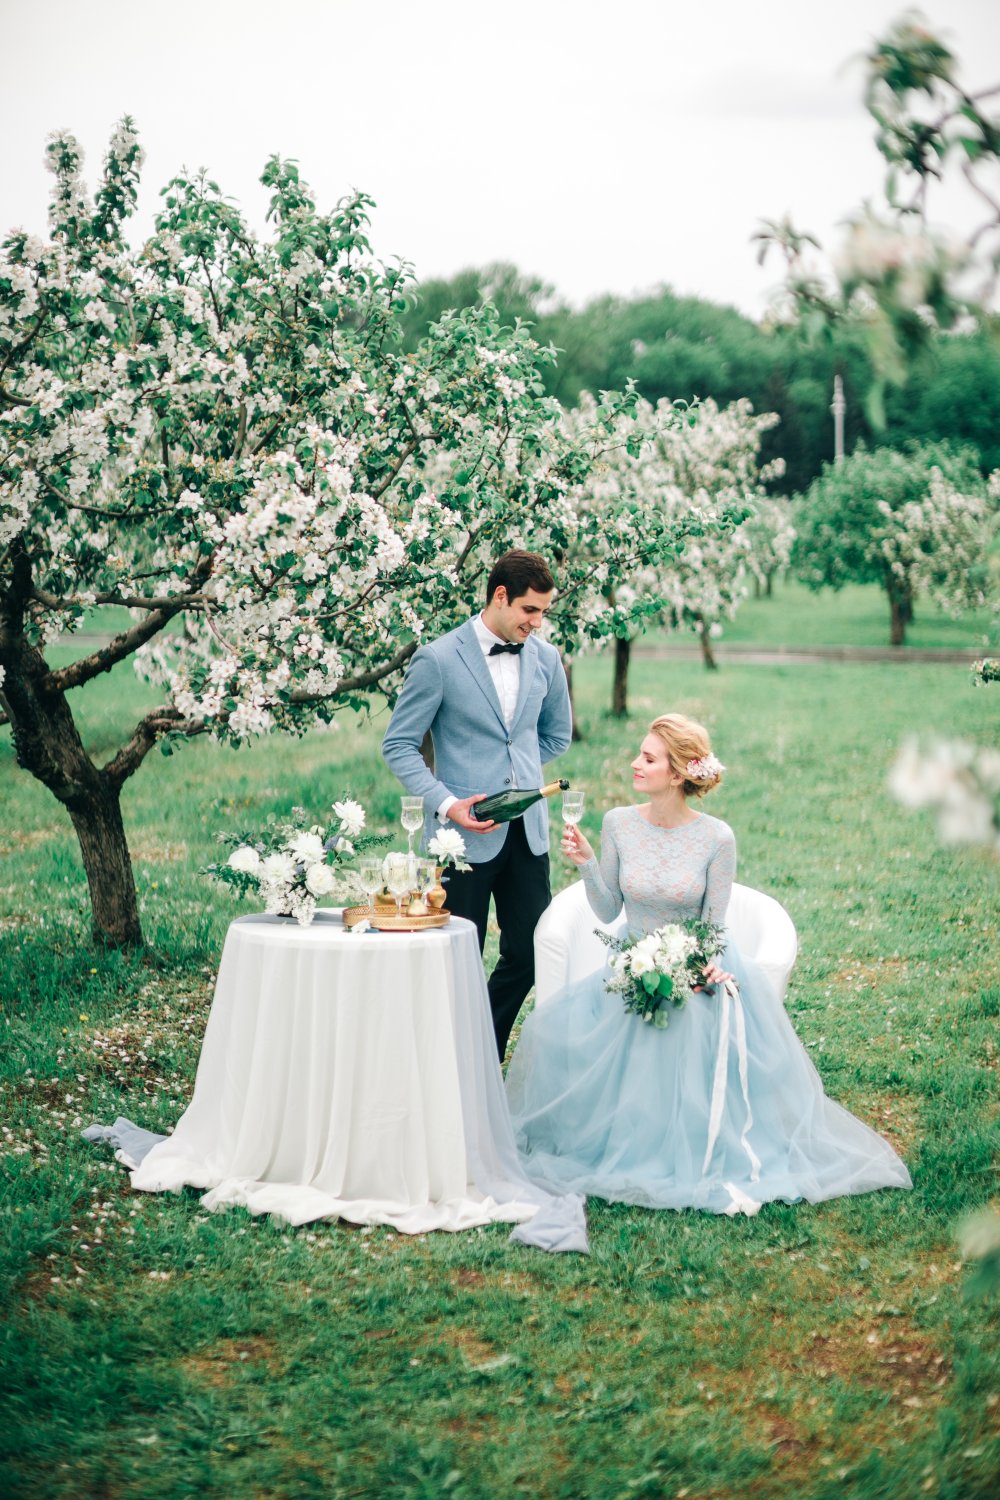 Свадьба в цветущем саду